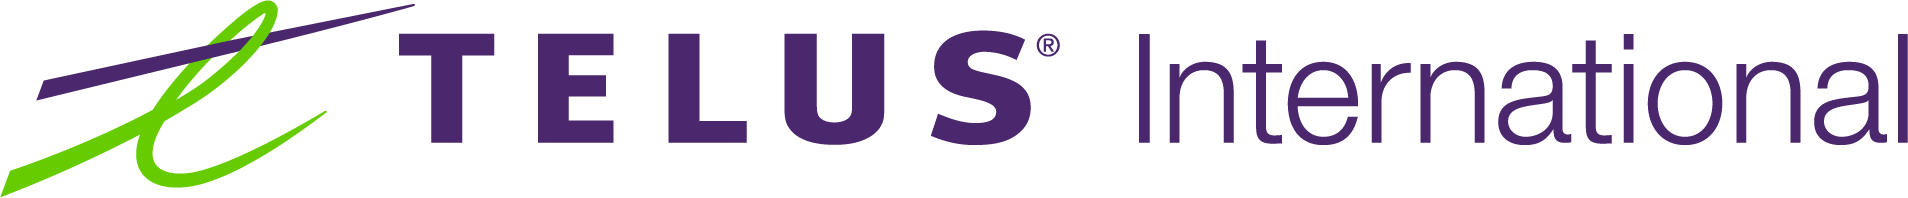 telus-logo-2020 (1)